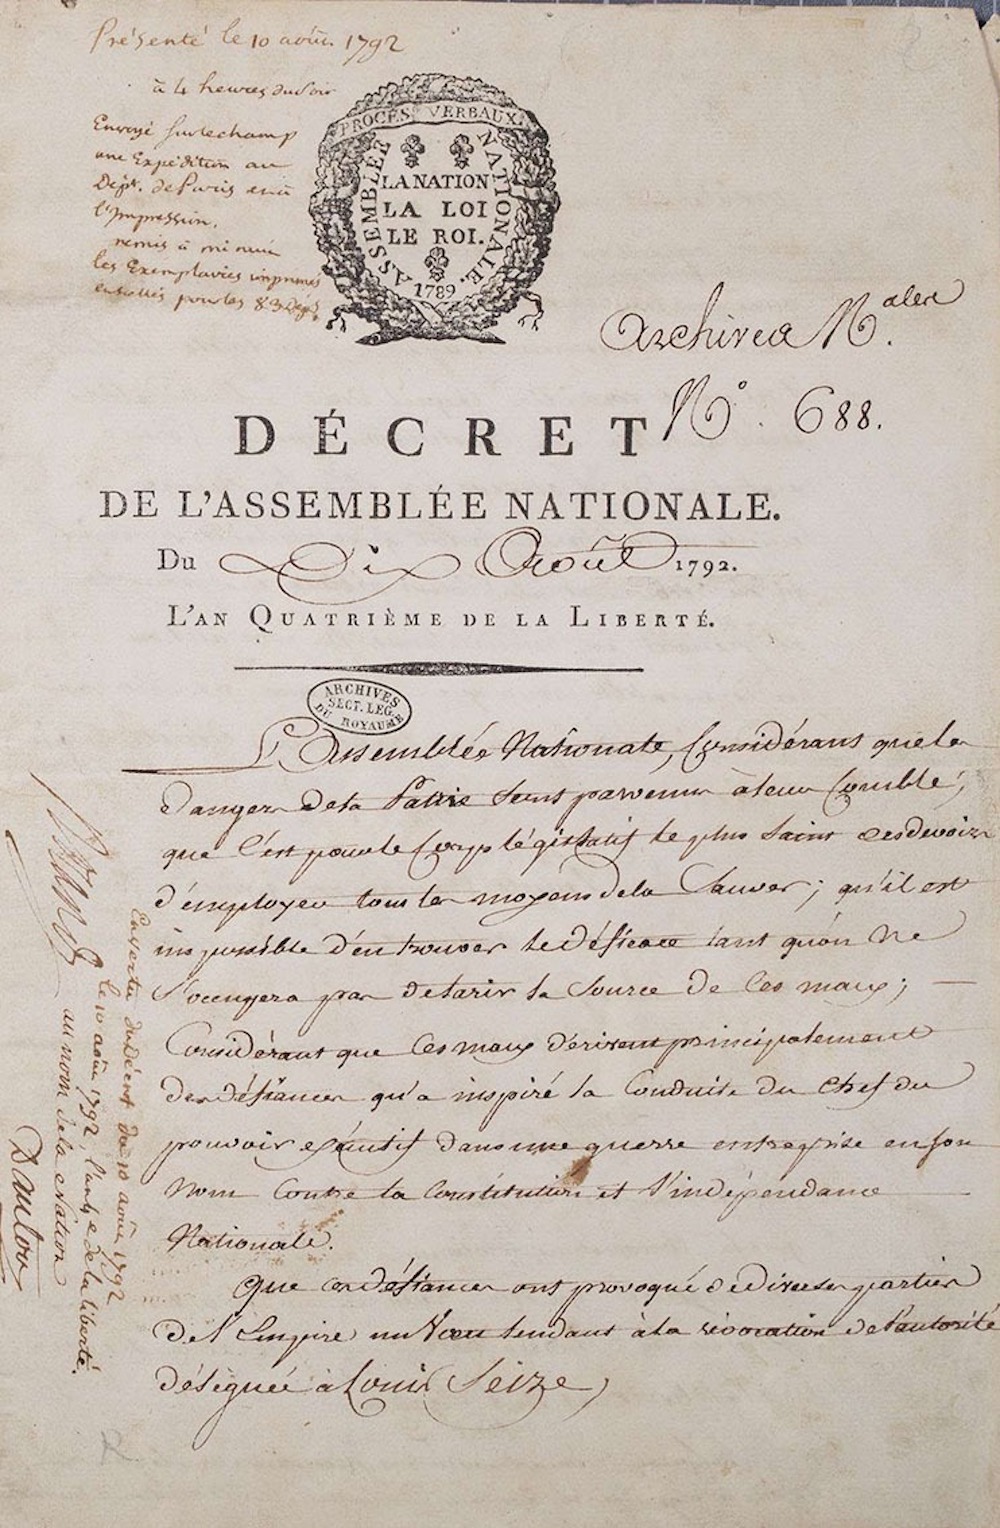 Décret présenté le 10 août 1792